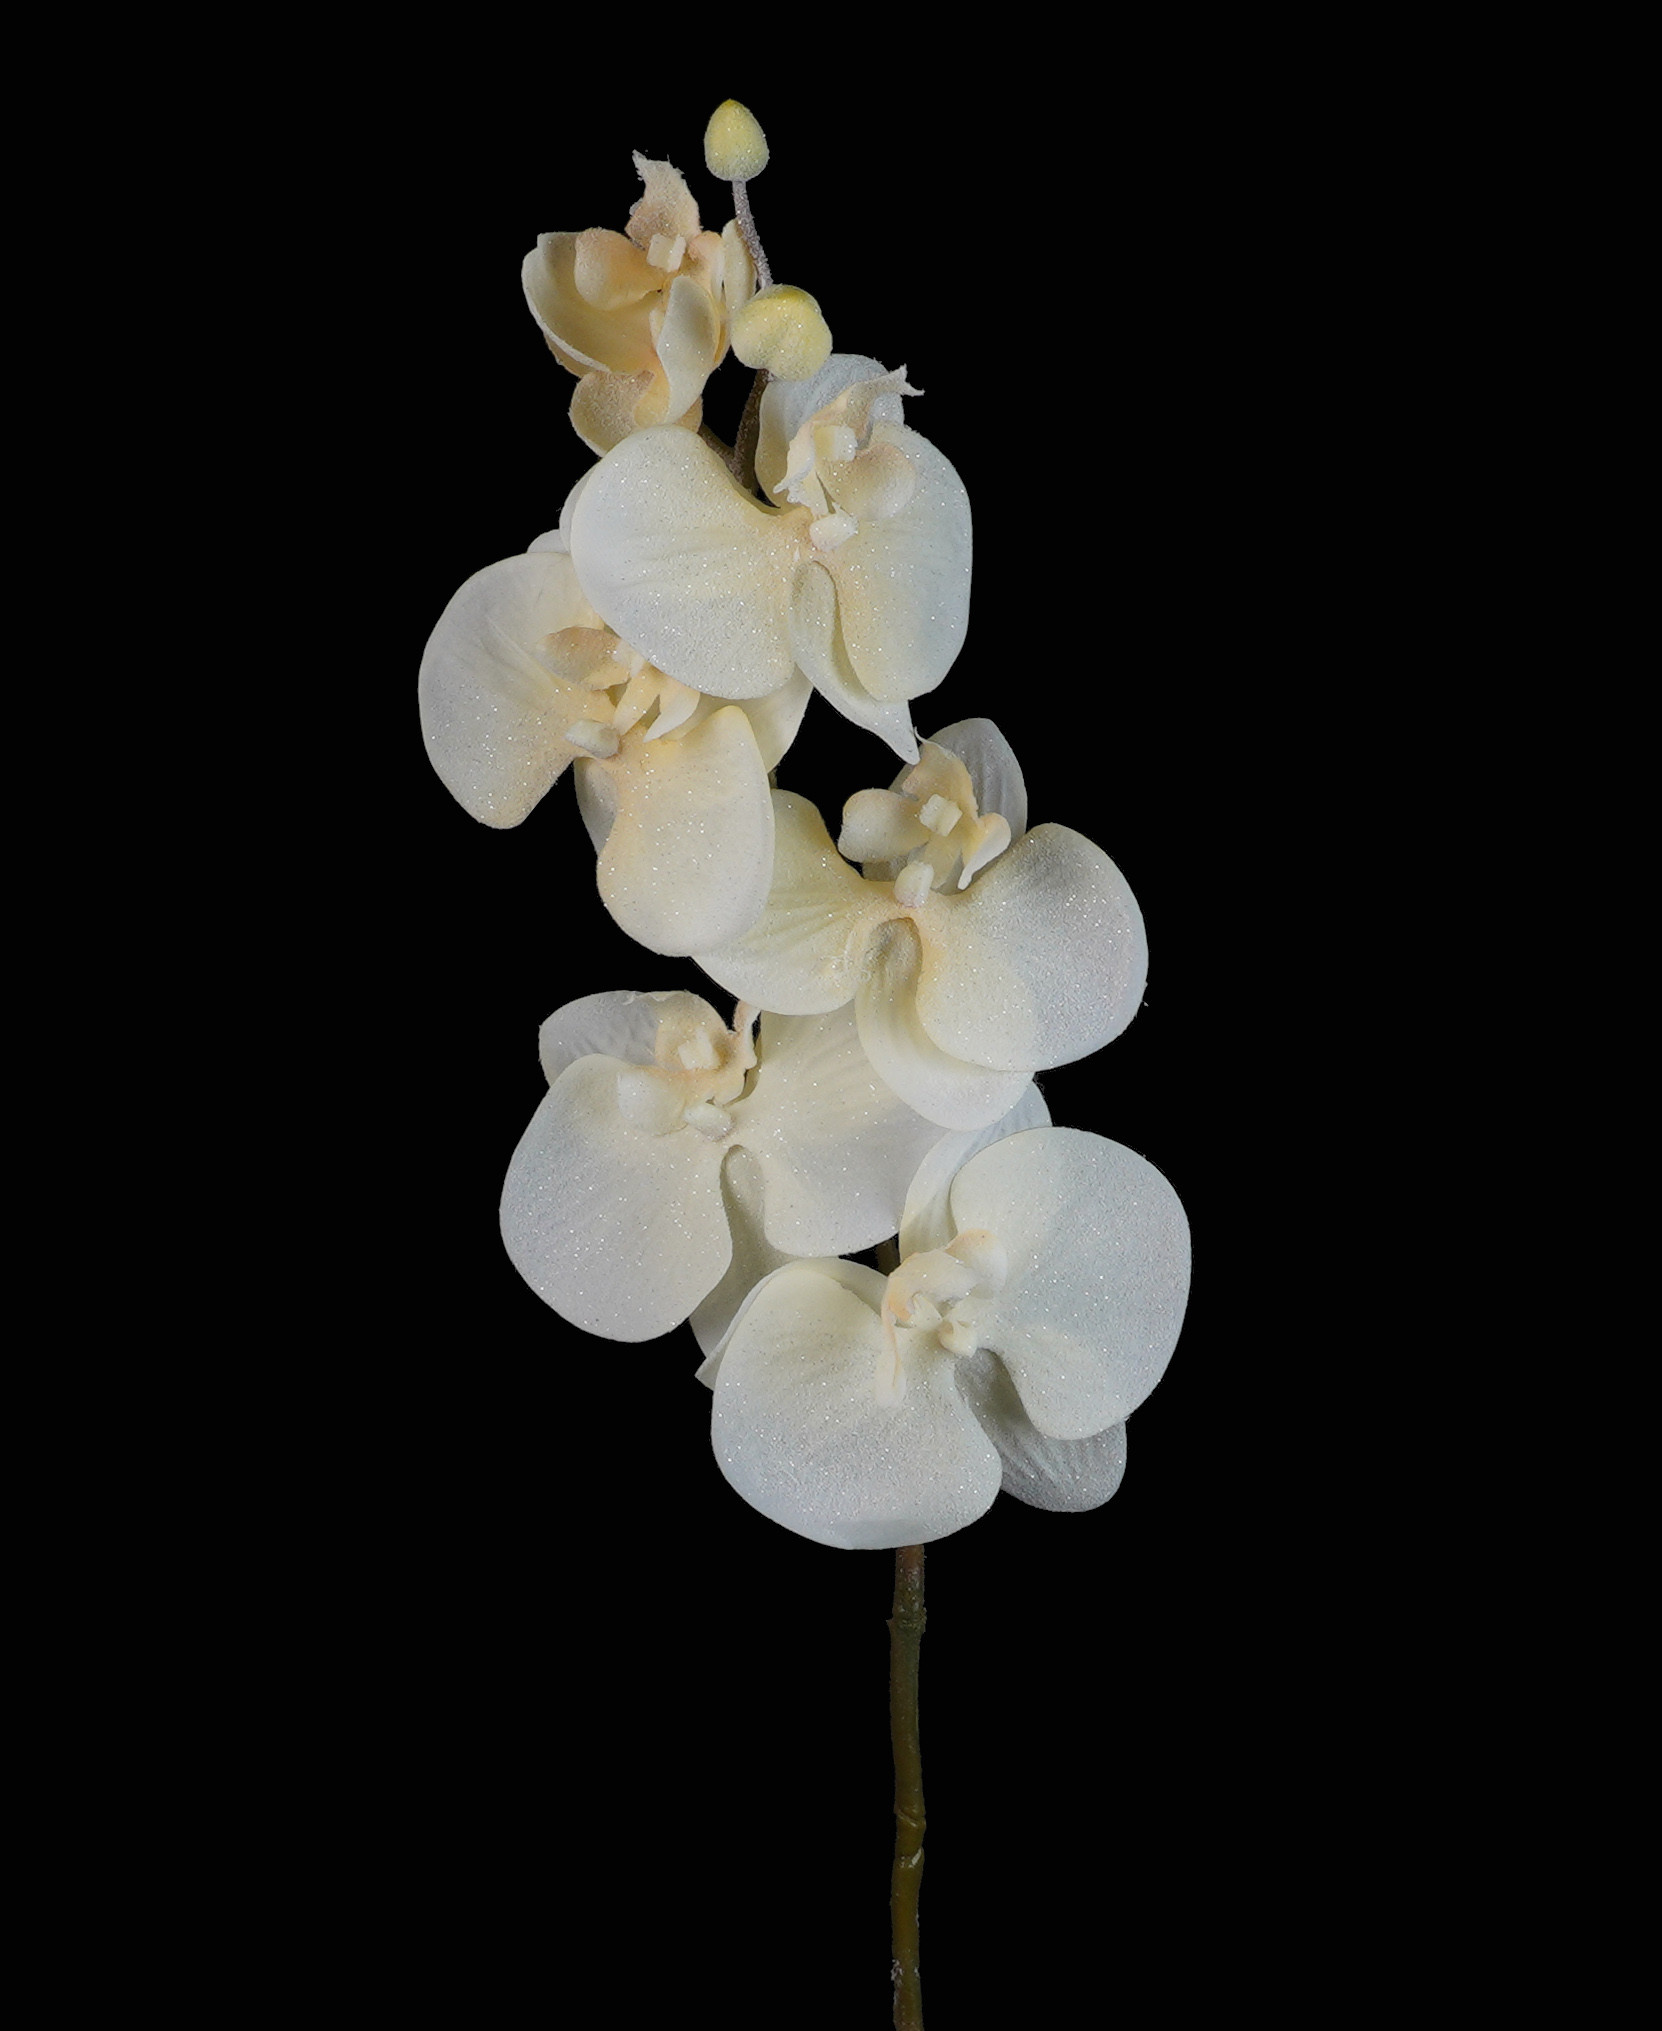 Plante Orchidée déco de table